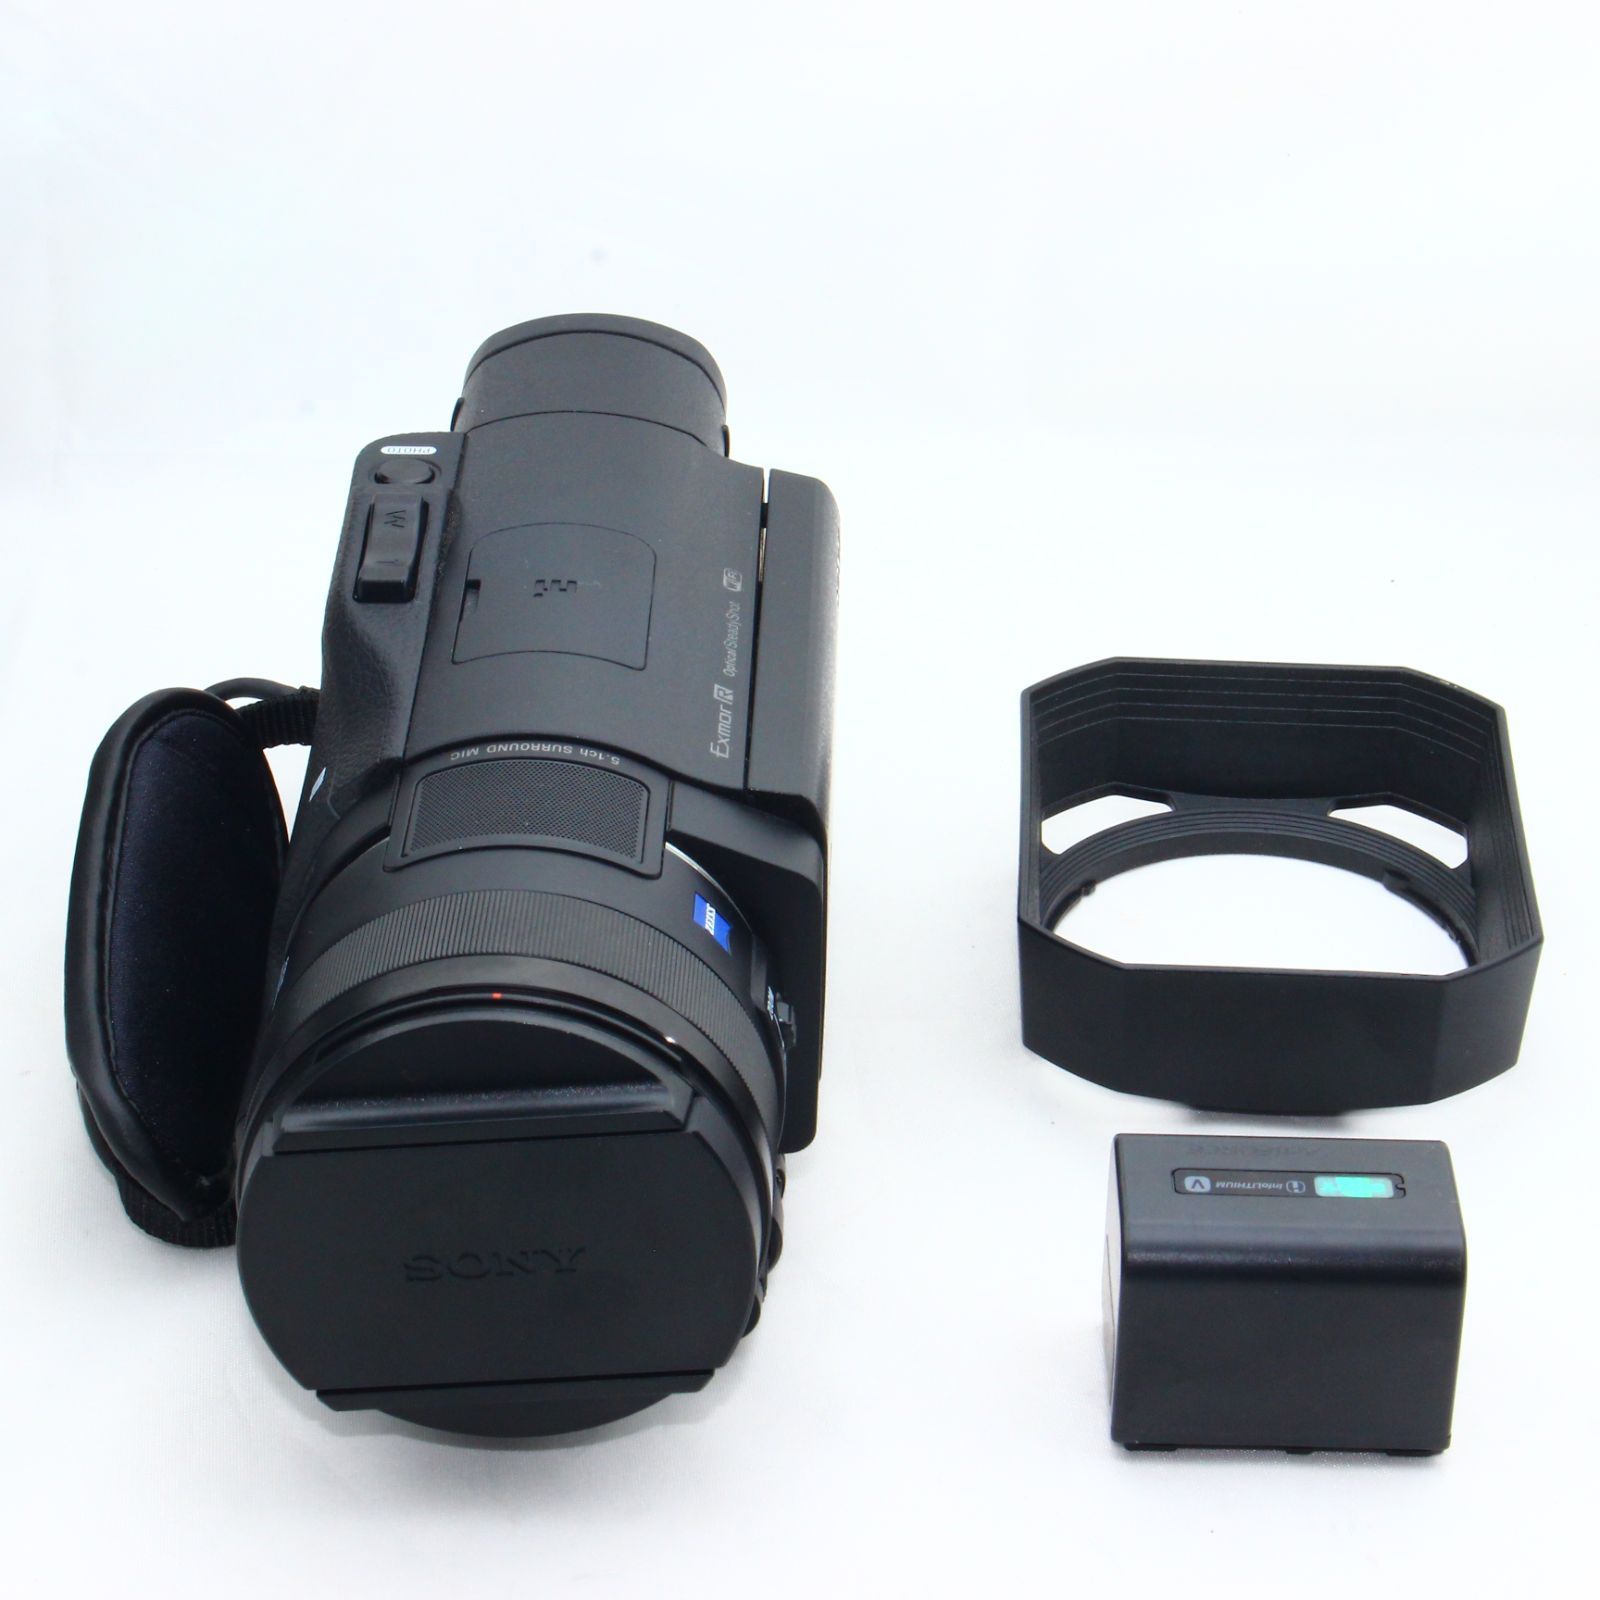 ソニー SONY ビデオカメラ FDR-AX100 4K 光学12倍 ブラック Handycam